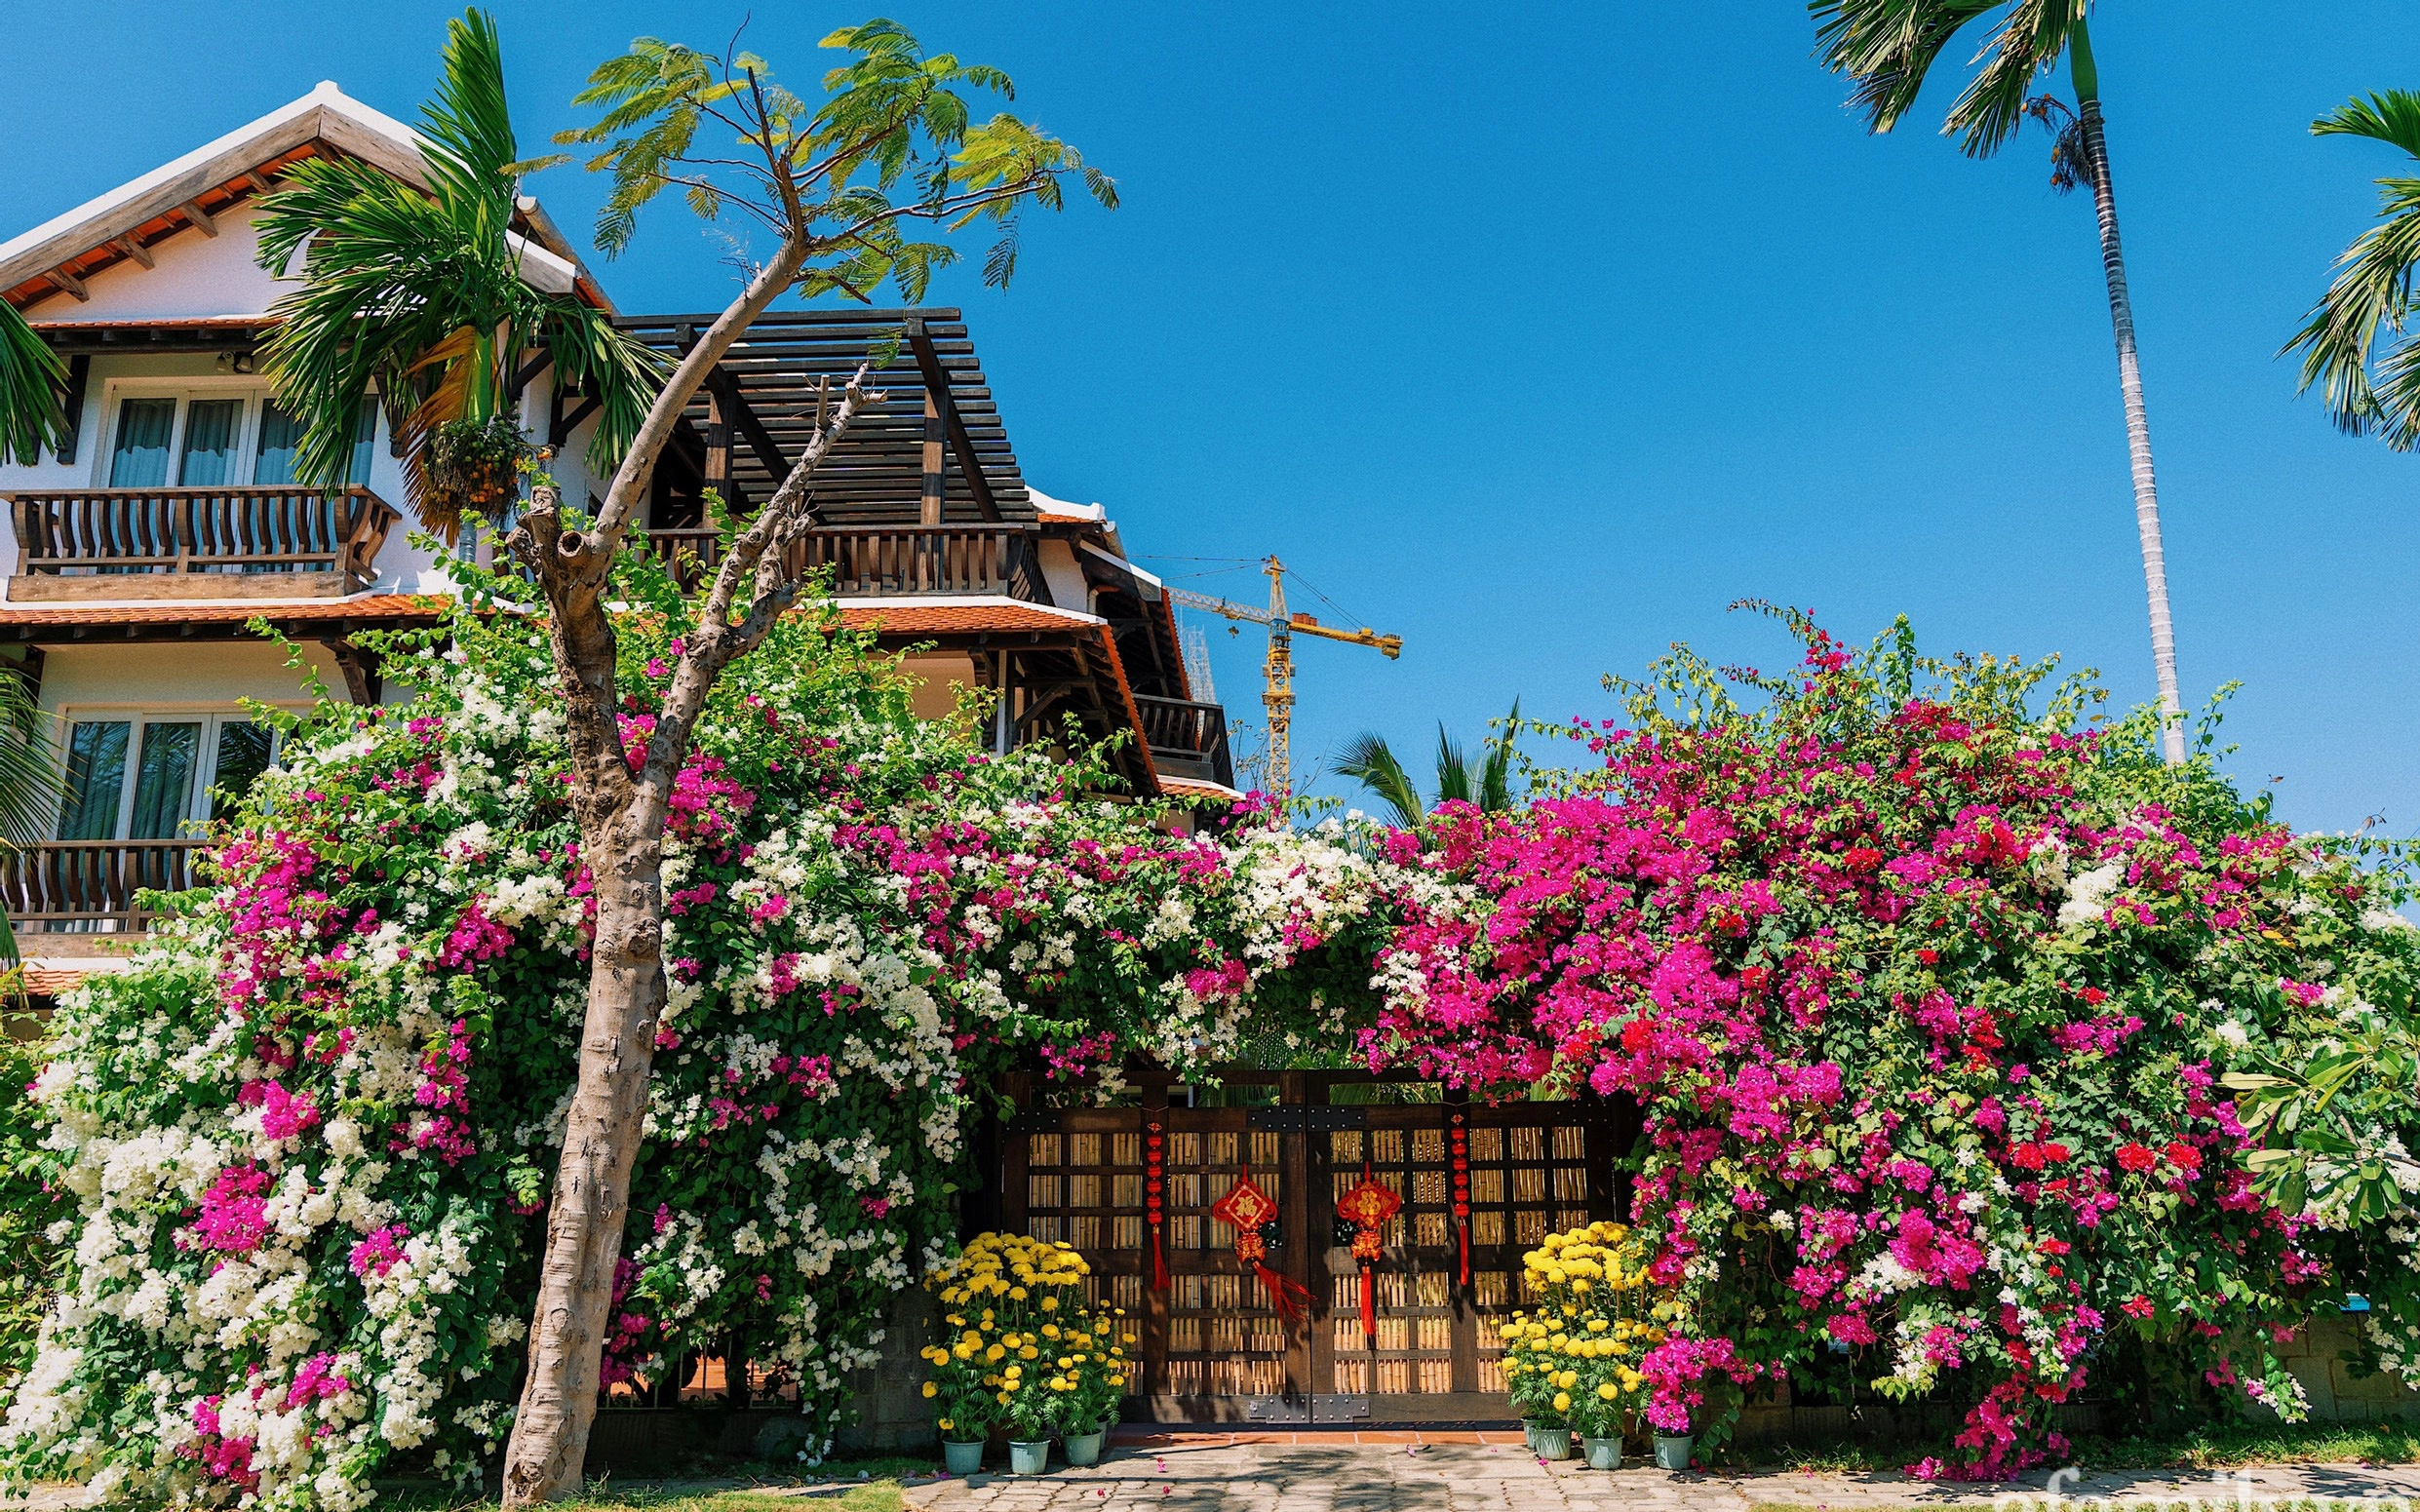 Căn nhà vườn xây 10 năm vẫn đẹp hút mắt với nội thất gỗ và cây xanh quanh nhà ở Nha Trang